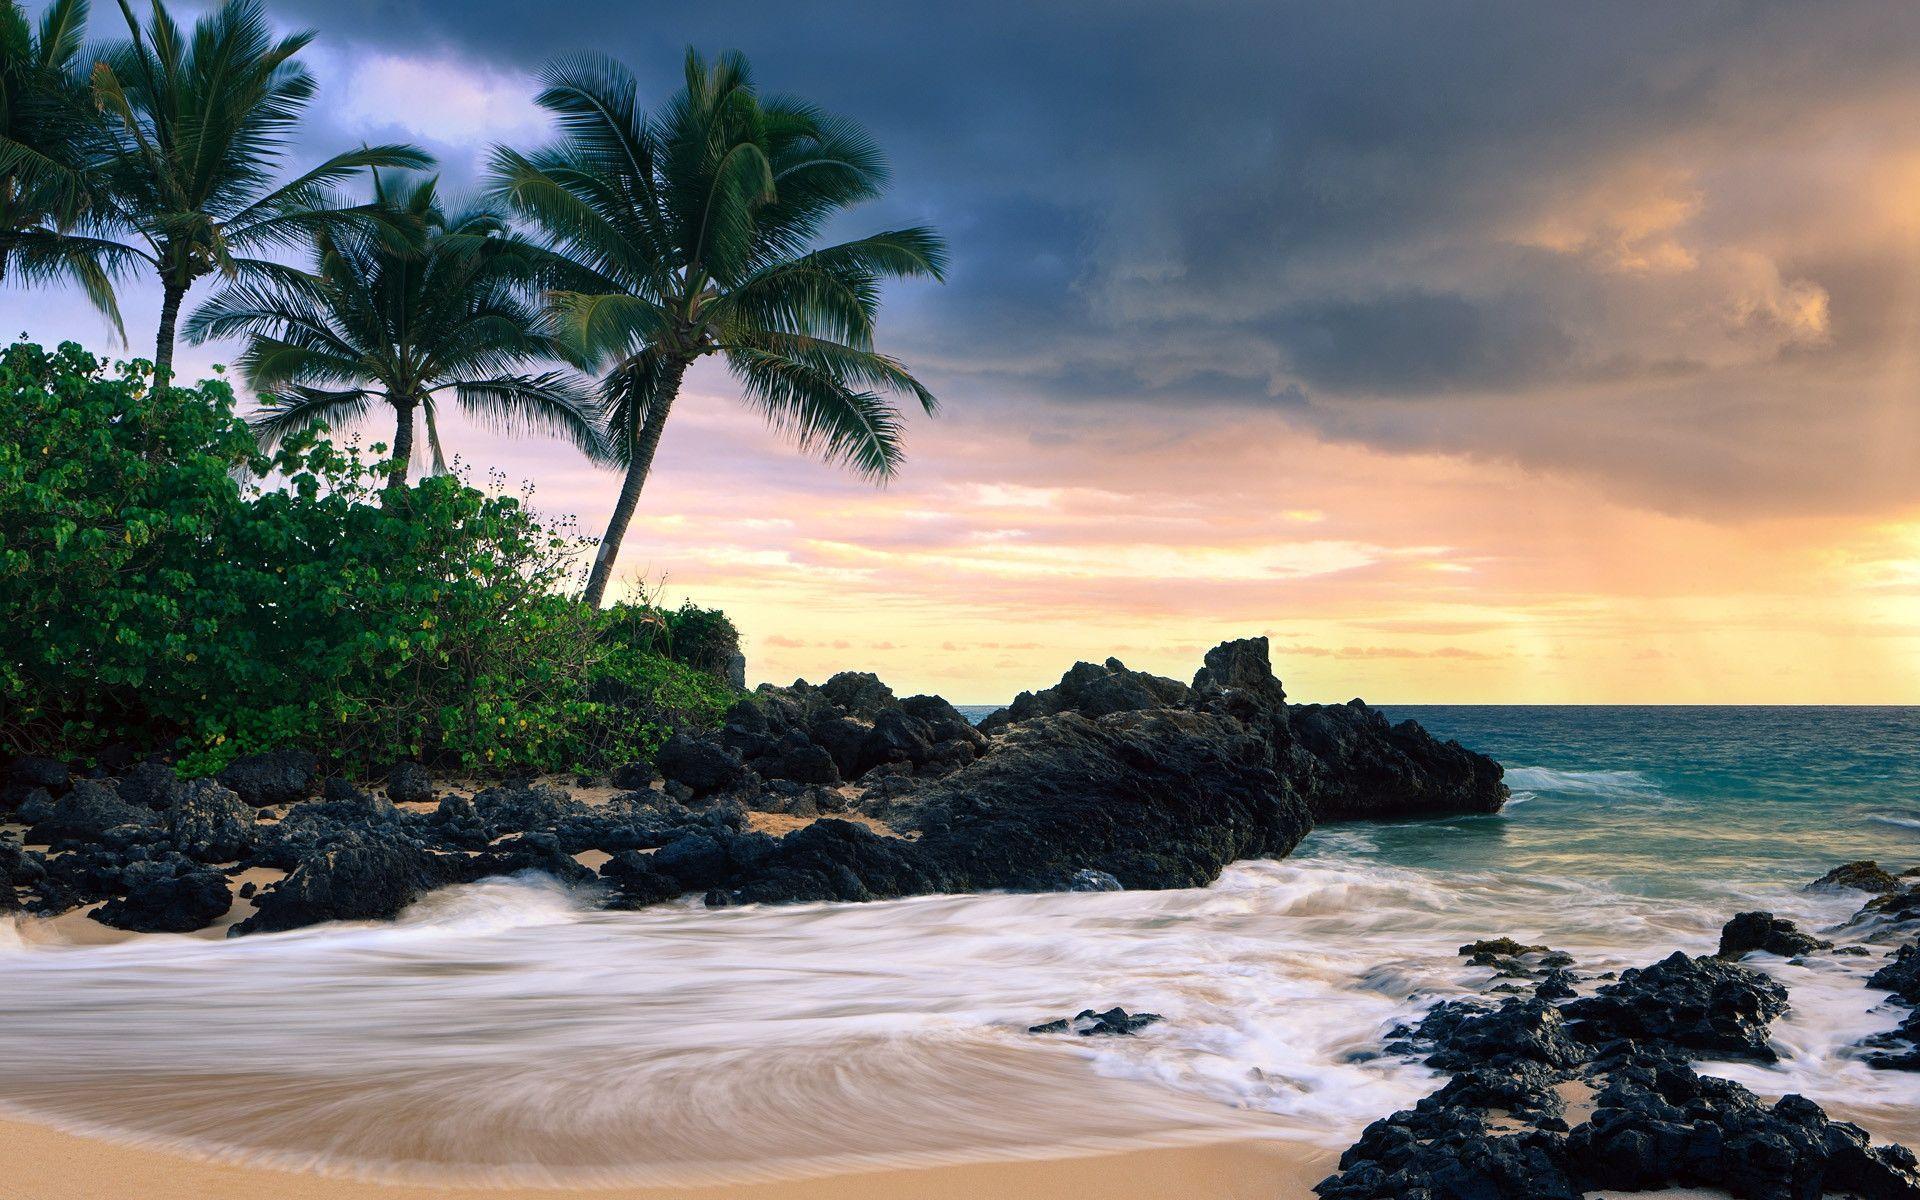 Beaches & Islands HD Wallpaper. Beach Desktop Background, Stock